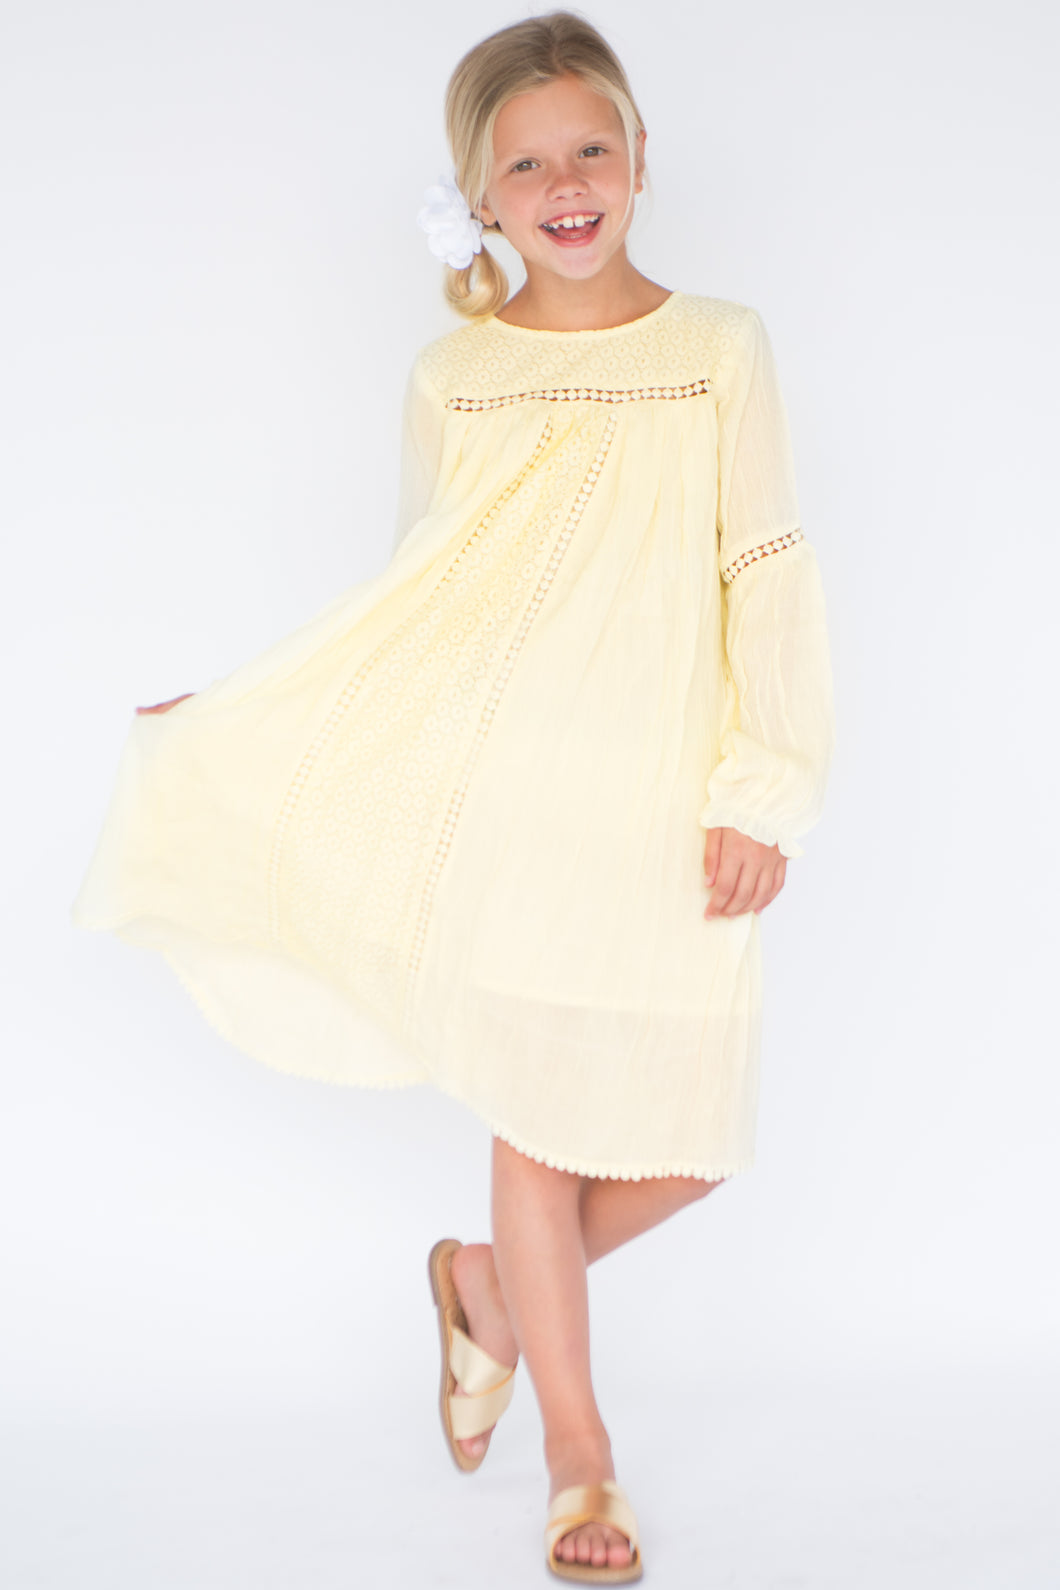 Pastel Yellow Lace & Net Detail Dress - Kids Wholesale Boutique Clothing, Dress - Girls Dresses, Yo Baby Wholesale - Yo Baby